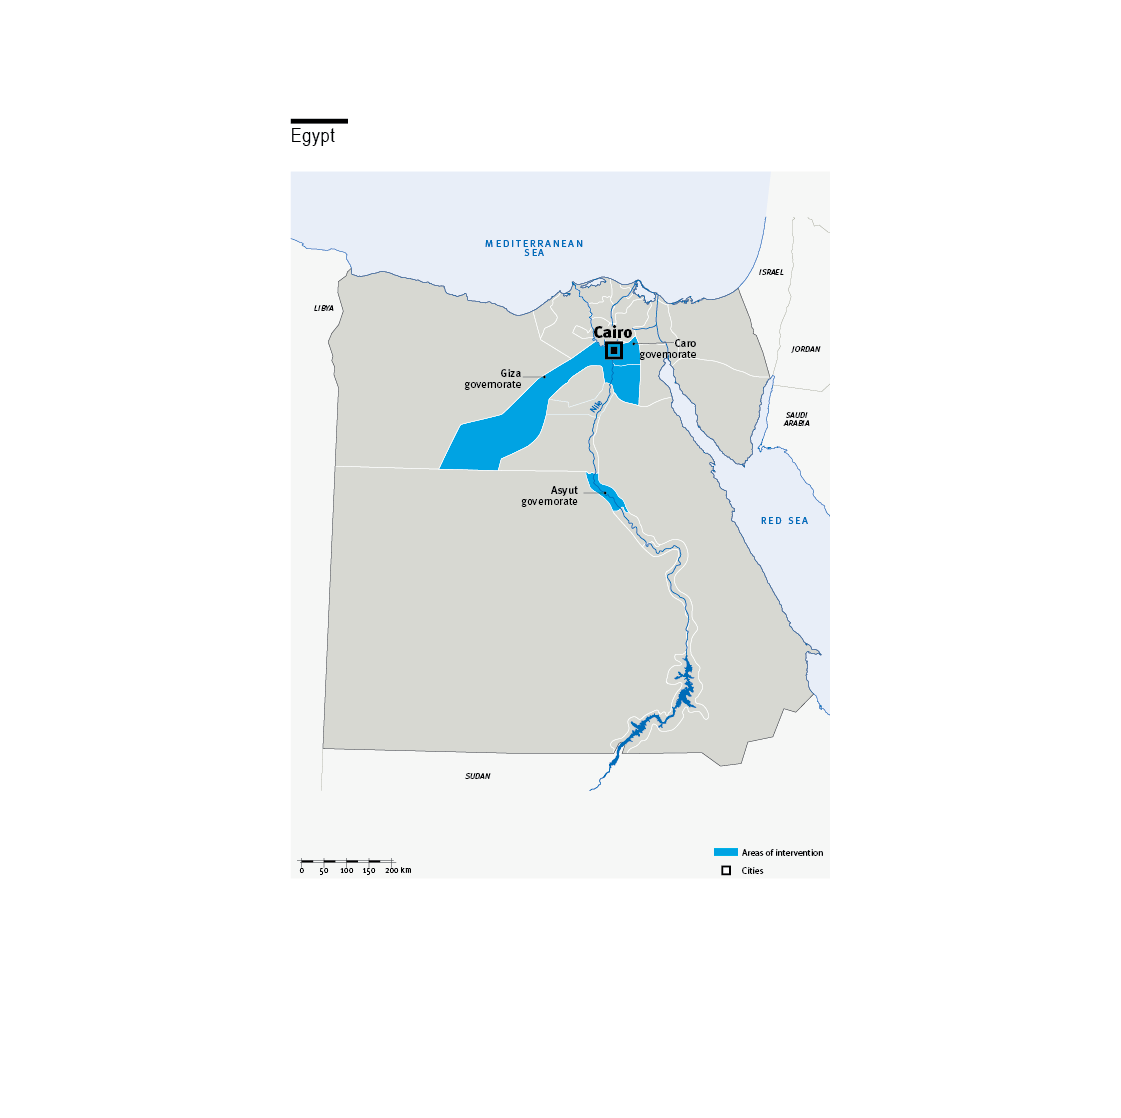 Kaart met geografische dekking van activiteiten HI in Egypte